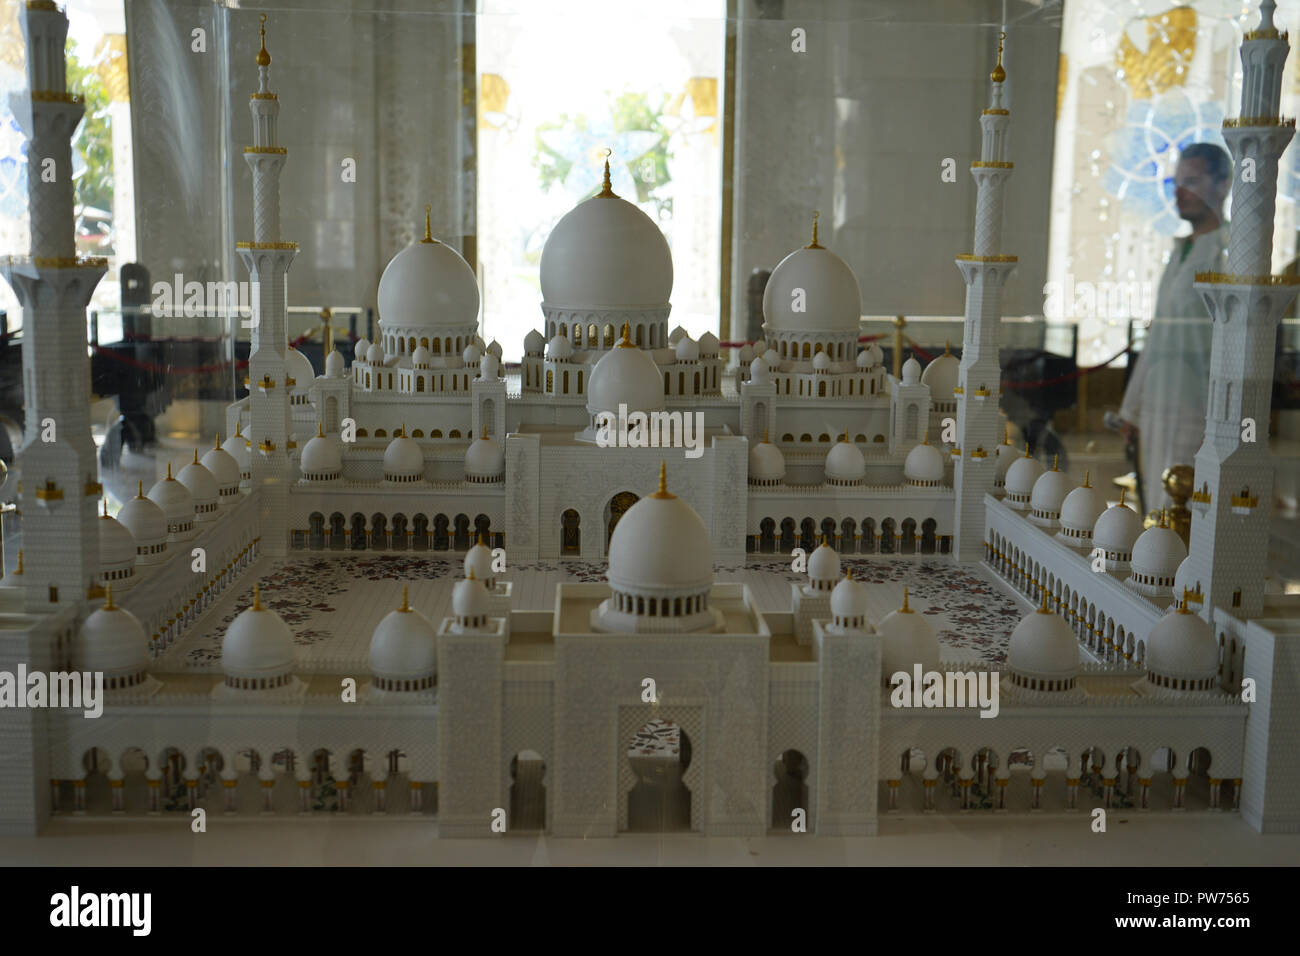 Modell der Sheikh-Zayed-Moschee, Scheich-Zayid-Moschee, Abu Dhabi, Emirat Abu Dhabi, Vereinigte Arabische Emirate, Asien Foto Stock